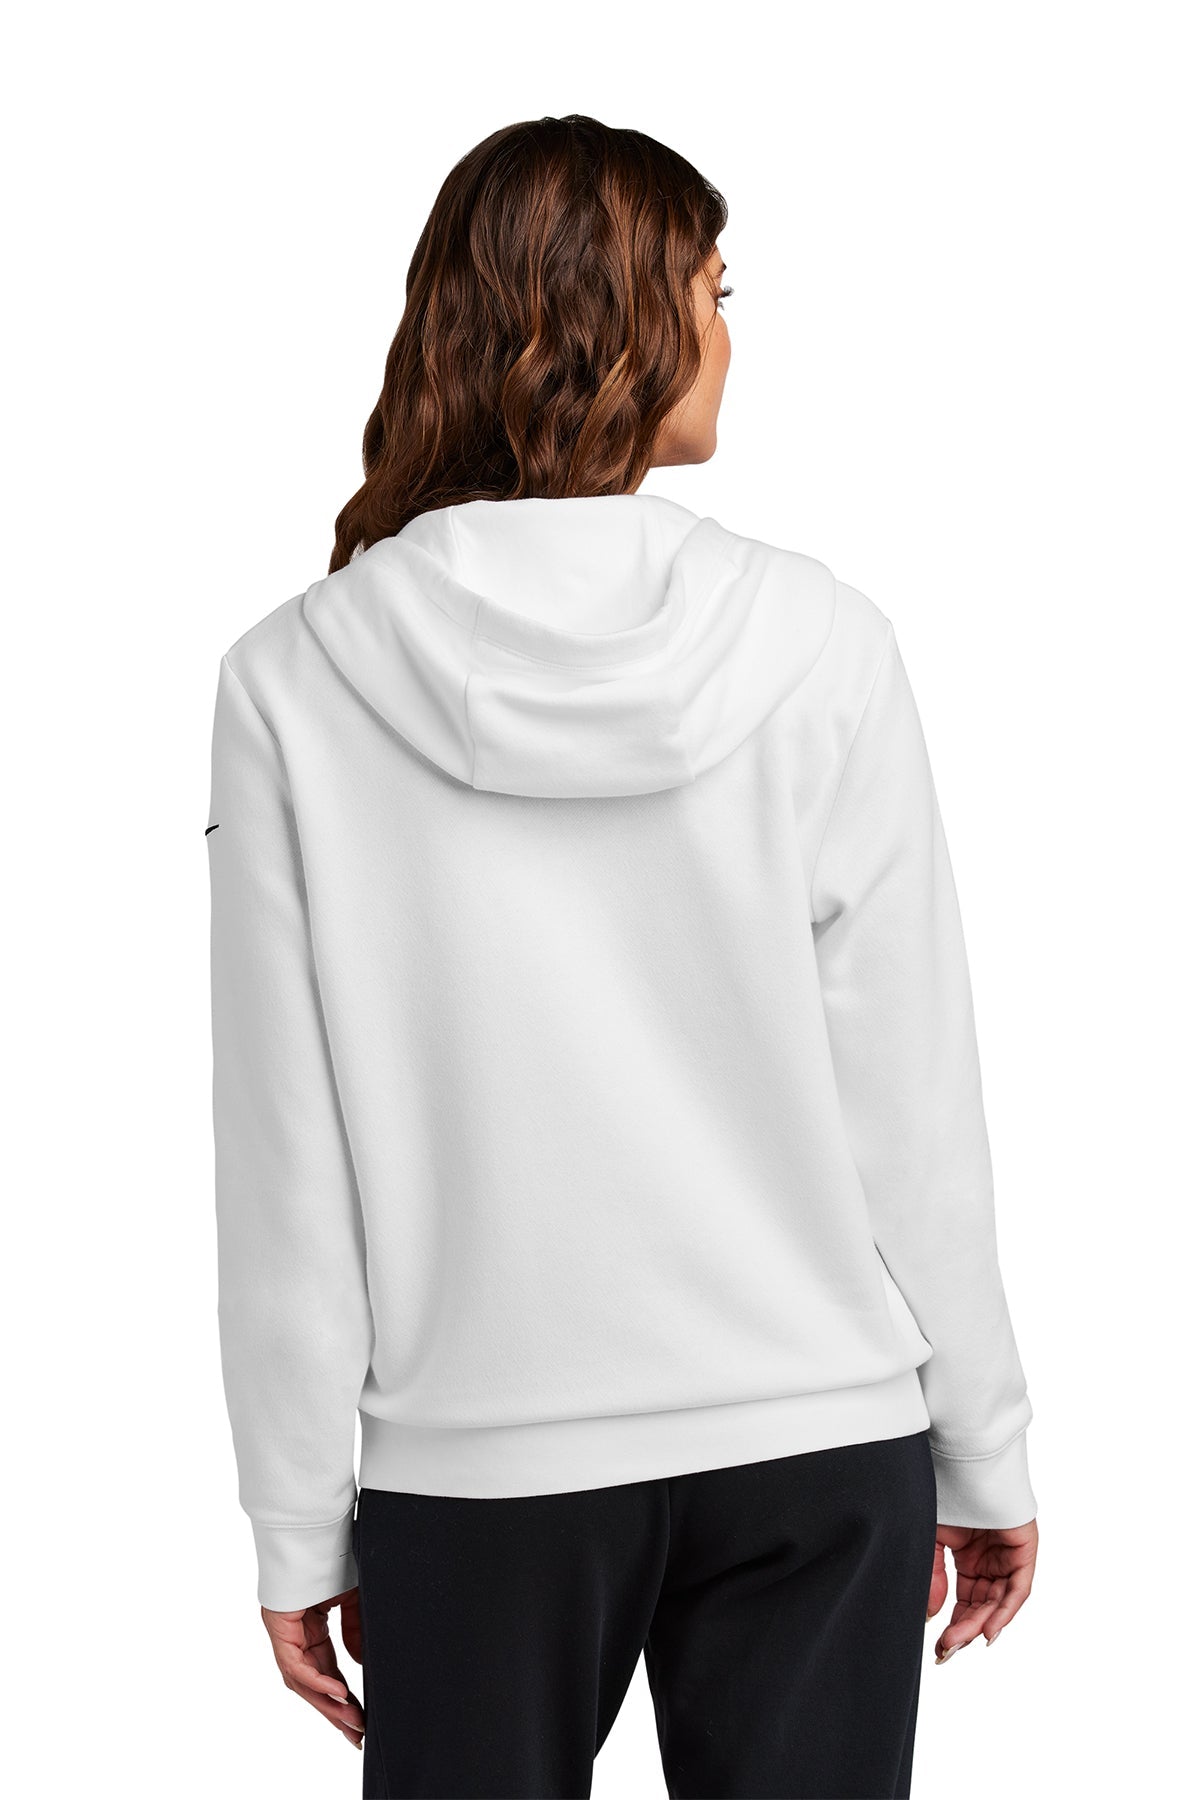 Nike Ladies Club Fleece Full-Zip Custom Hoodies, White